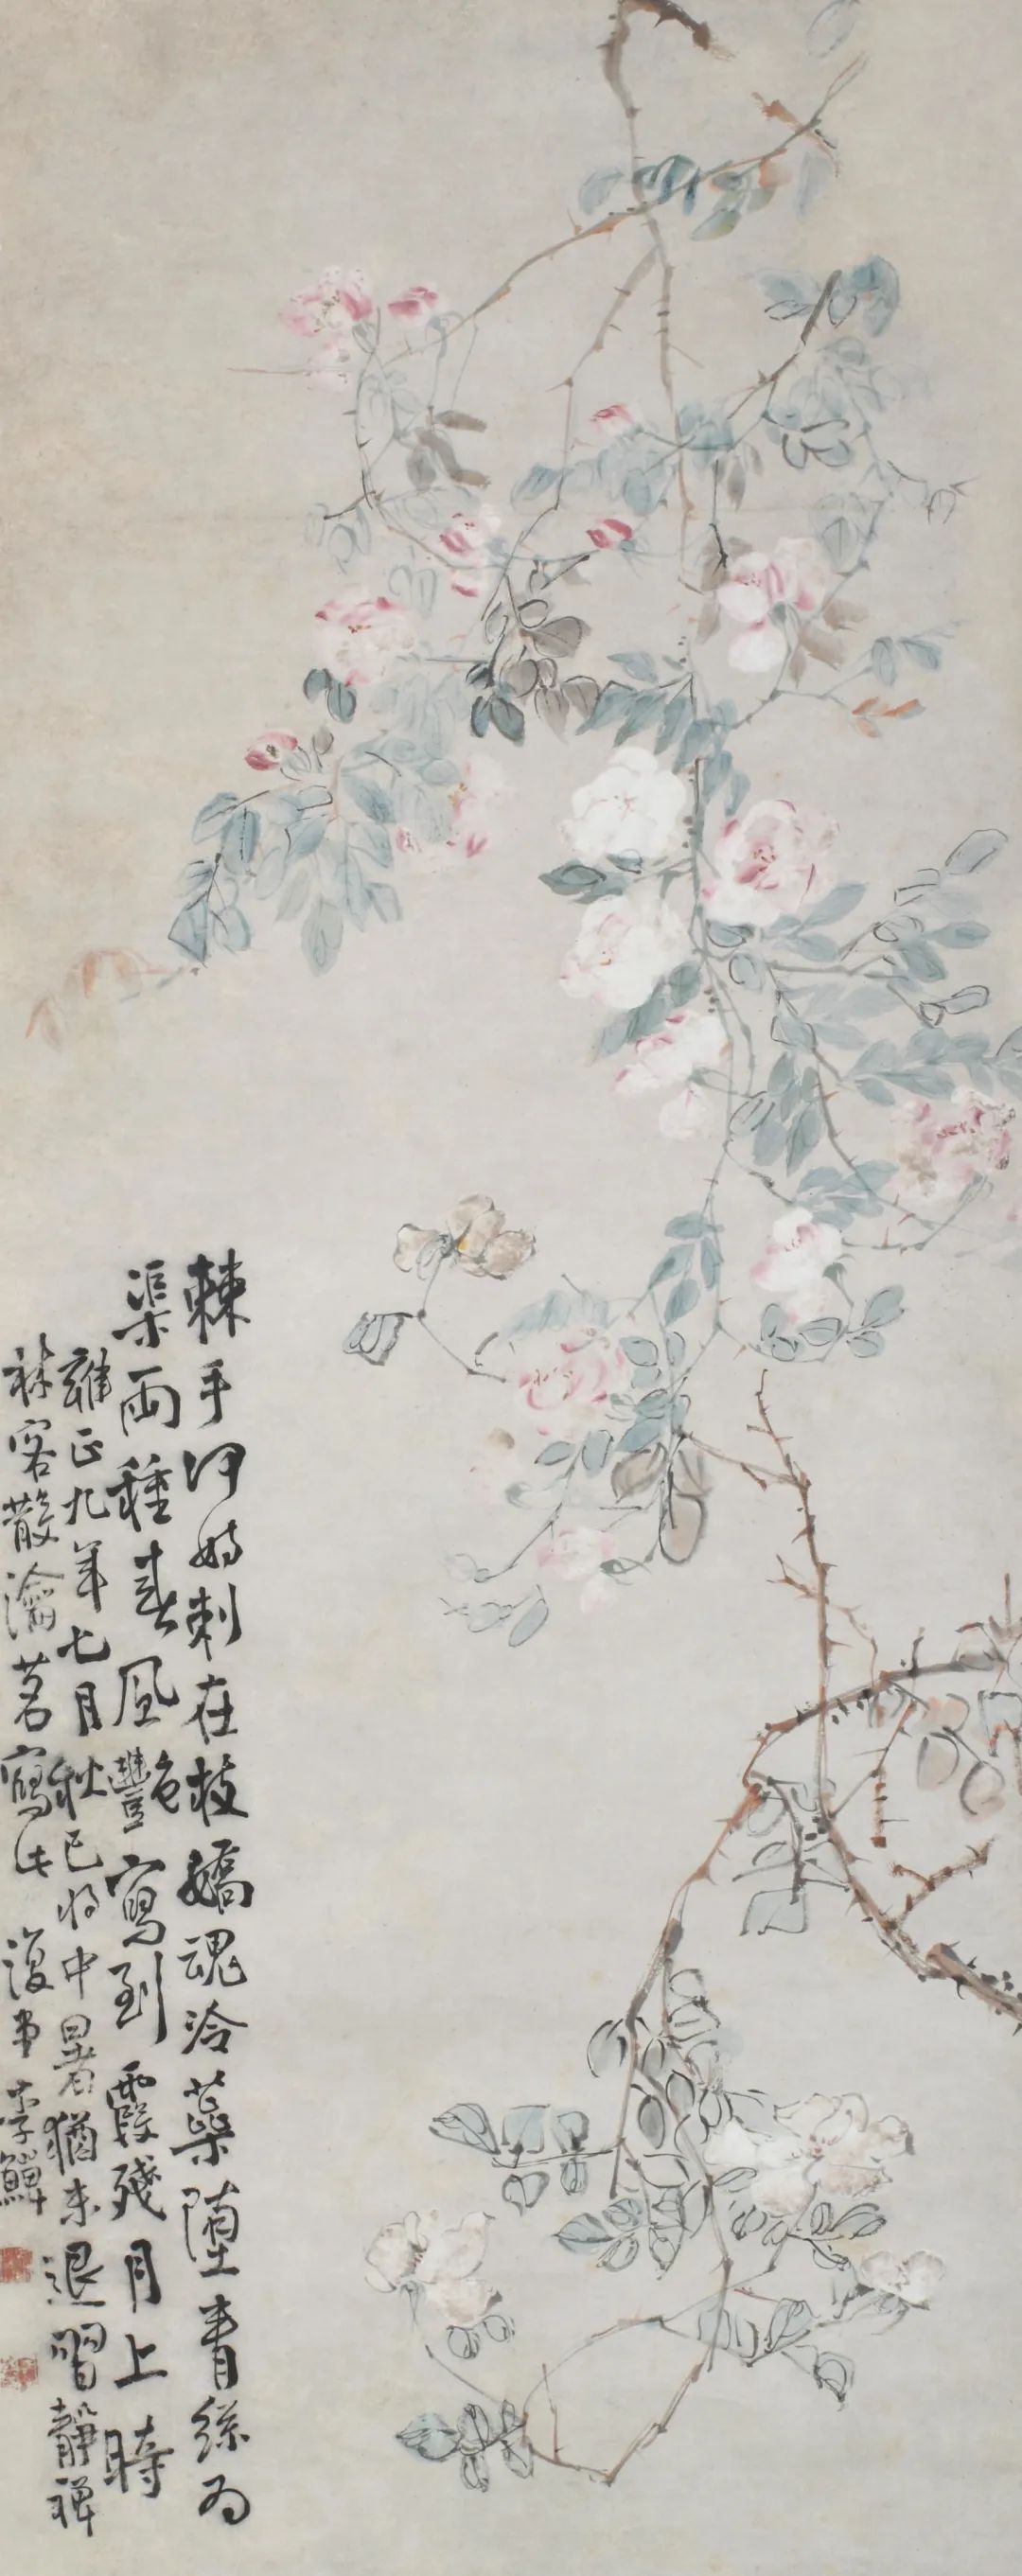 清·李鱓《蔷薇图》 扬州博物馆藏